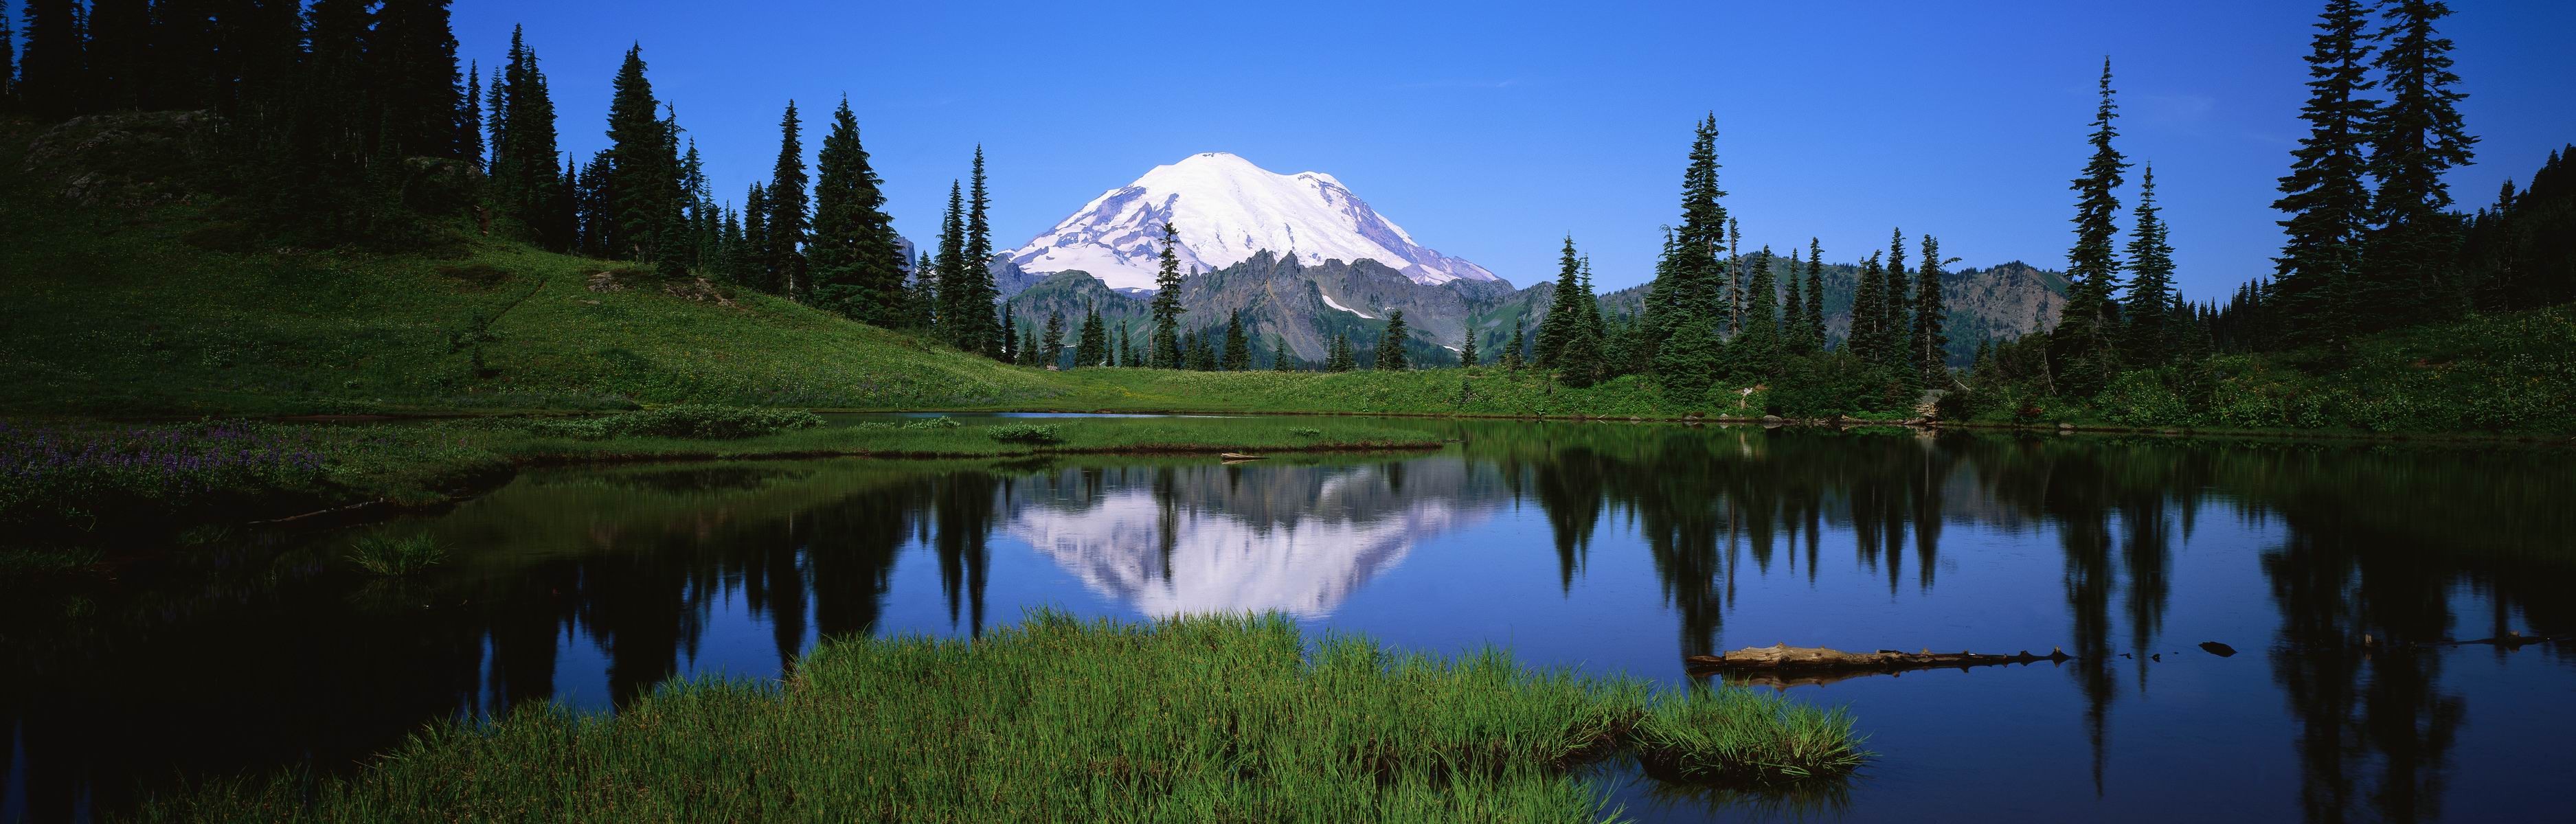 Landscape Water Reflection Mountains Mt Rainier 3750x1200